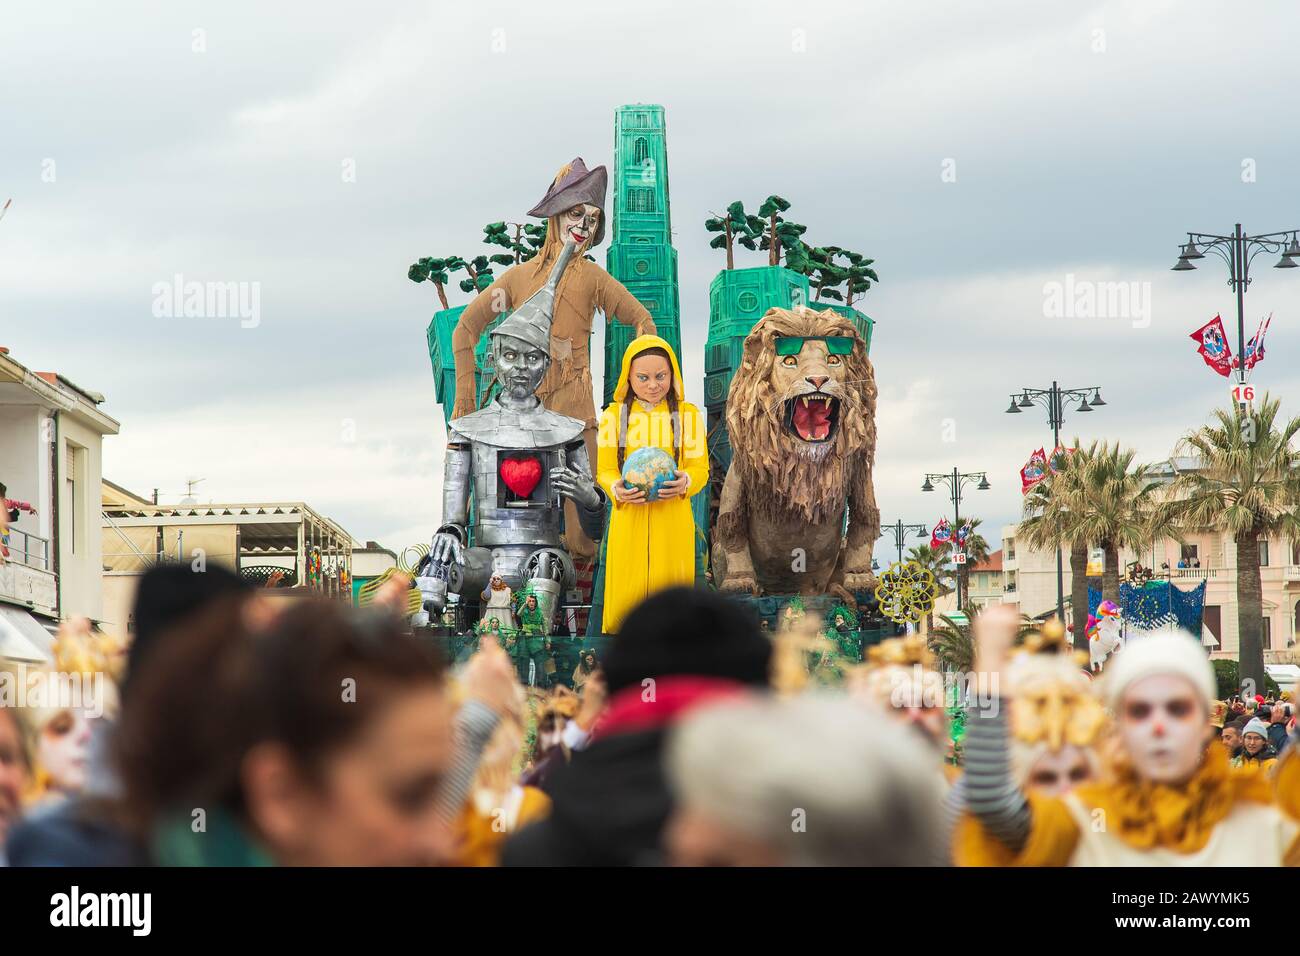 Viareggio, ITALIEN - 09. FEBRUAR 2020: Greta Thunberg ist eine Maske des Karnevalsumzugs auf den Straßen von Viareggio, Italien. Karneval von Viareggio gilt als einer der wichtigsten Karnevale Italiens. Stockfoto